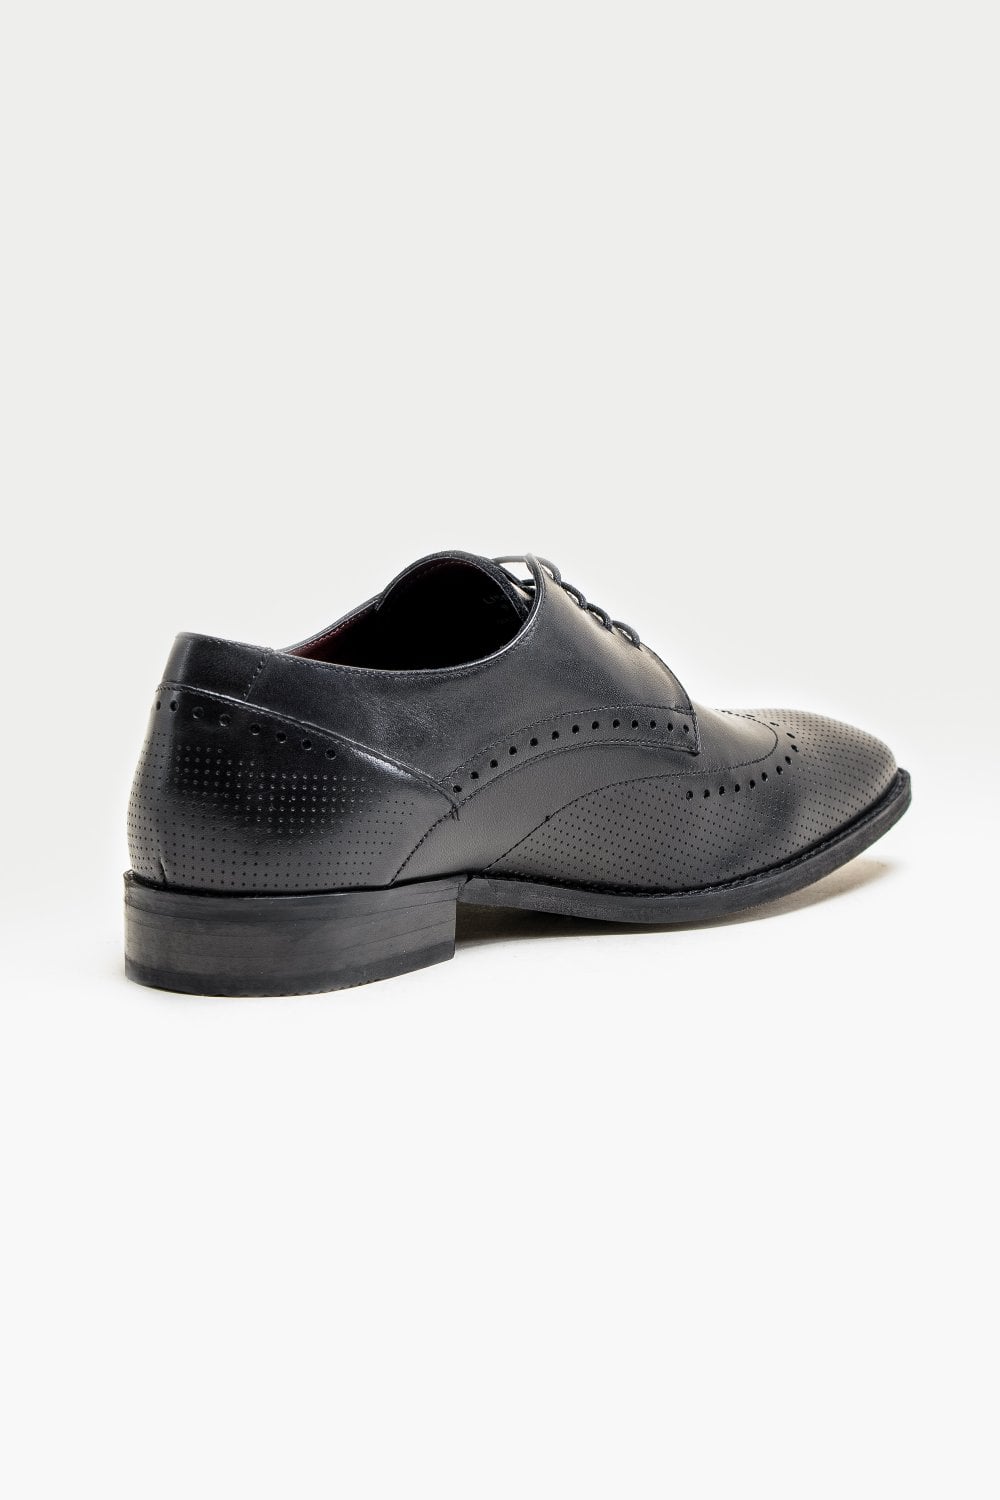 Cavani Lisbon Chaussures noires - Bout d’aile Brogue